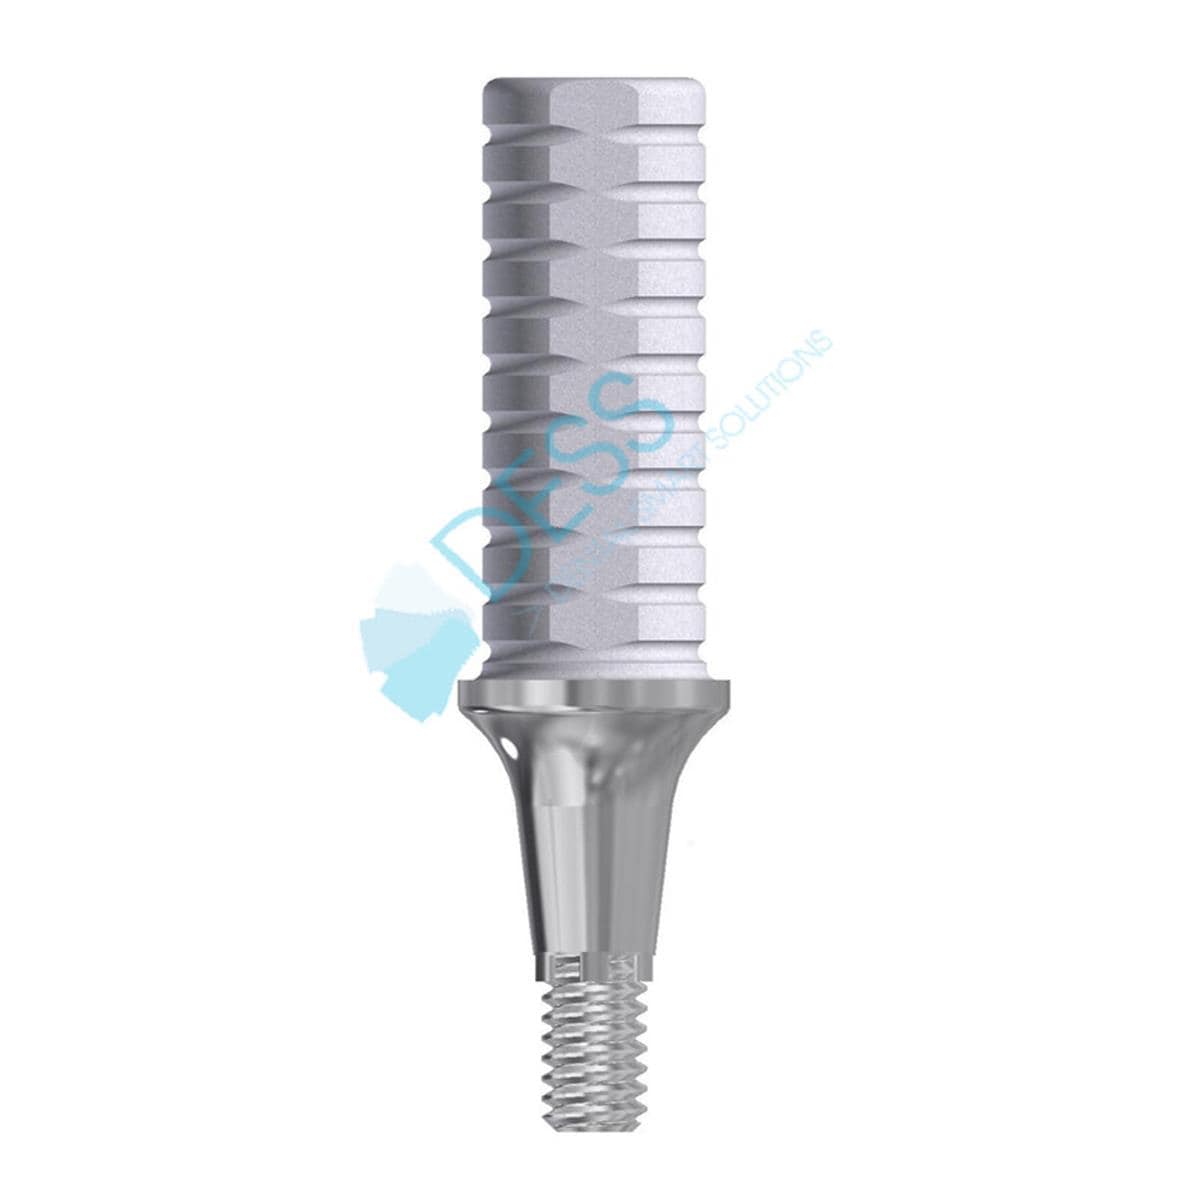 Pilier provisoire HG 2,5mm, anti-rotationnel sur implants DENTSPLY ANKYLOS C/X. Vis incluse 25 250 DESS